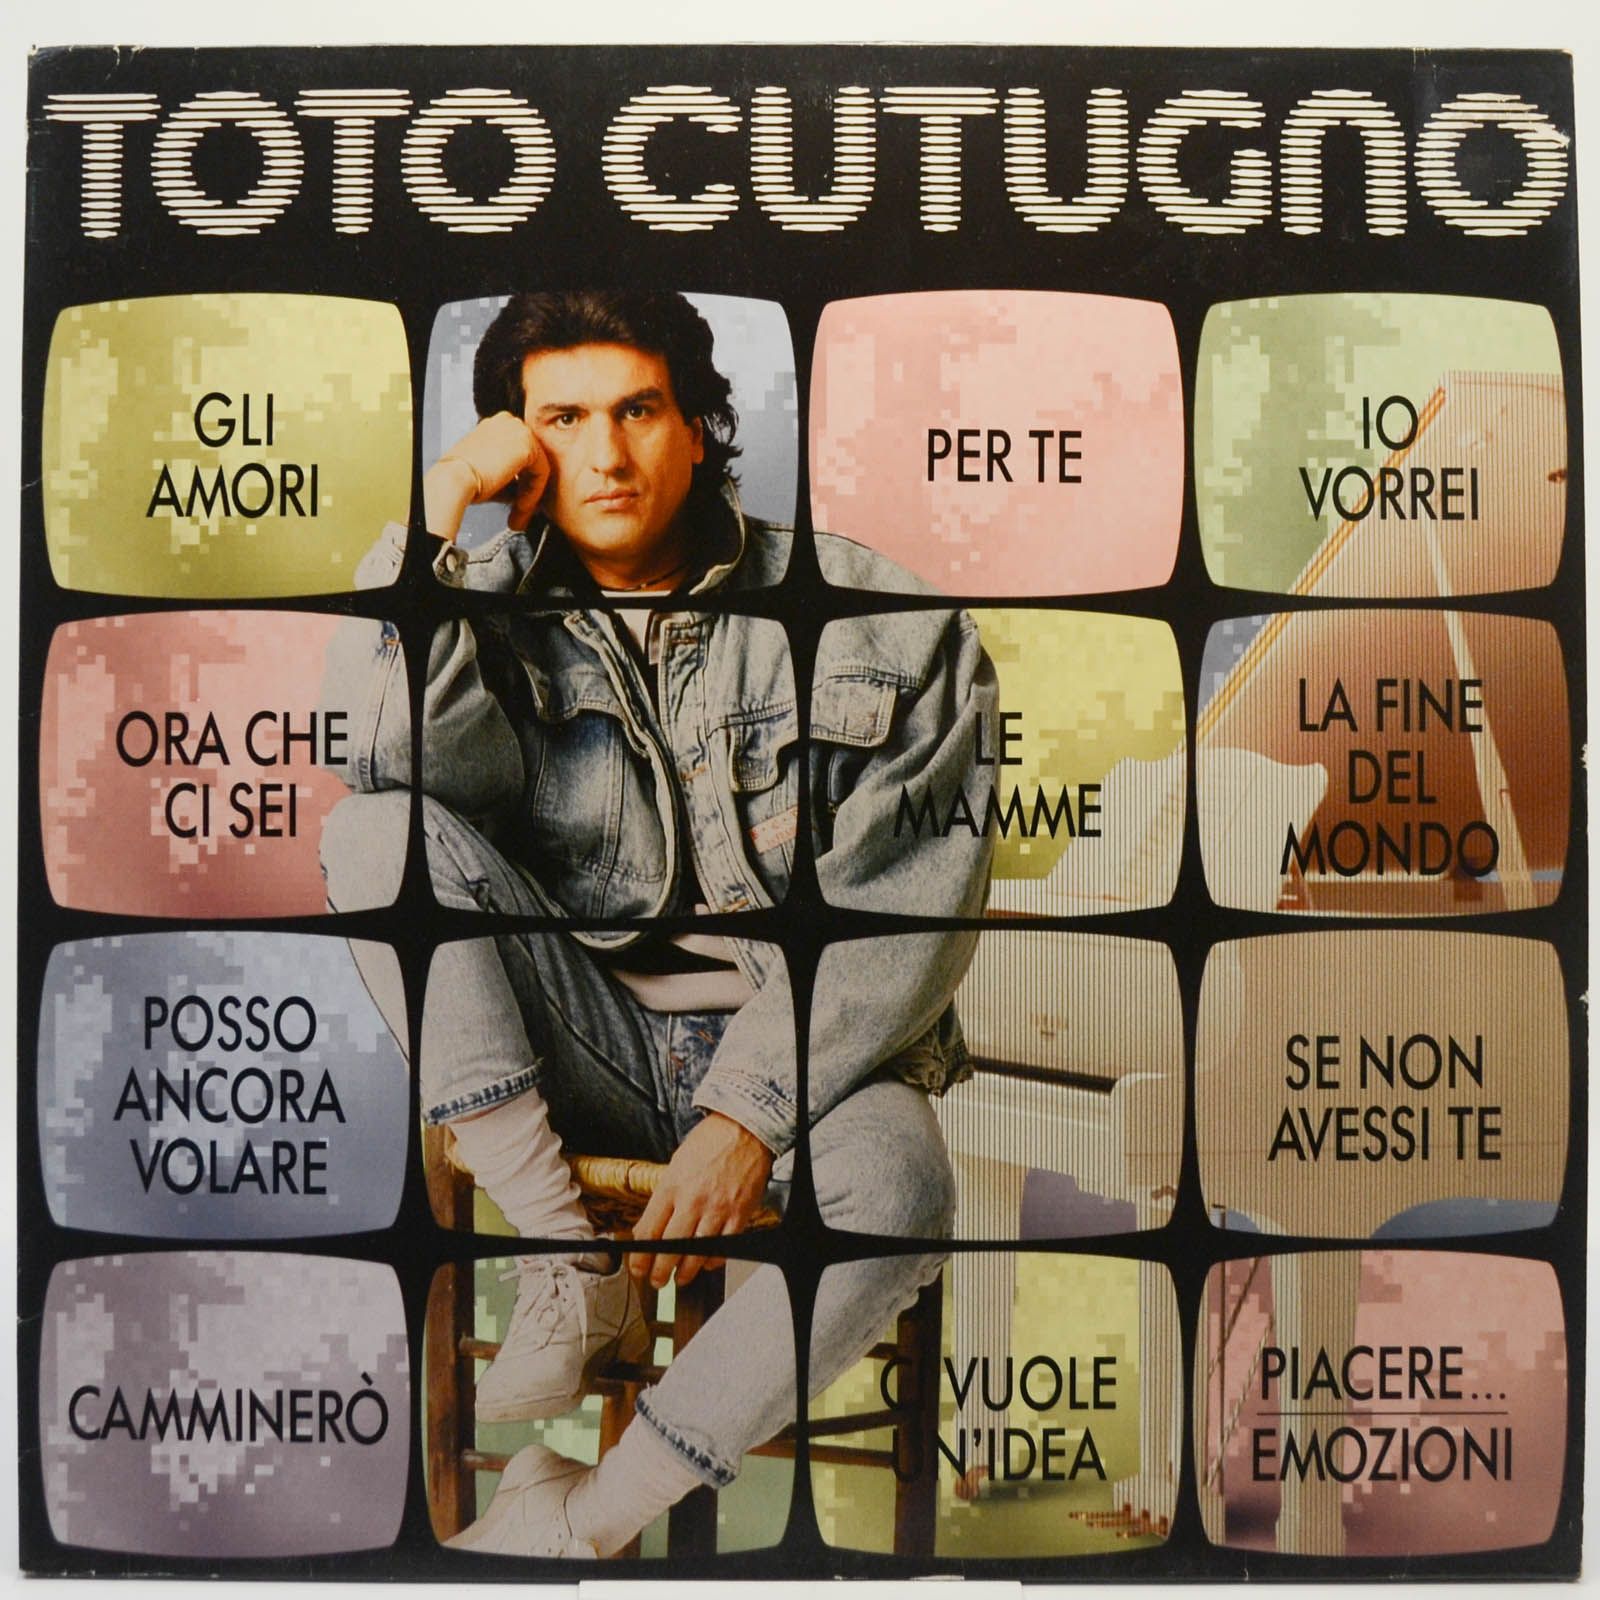 Toto Cutugno — Toto Cutugno, 1990